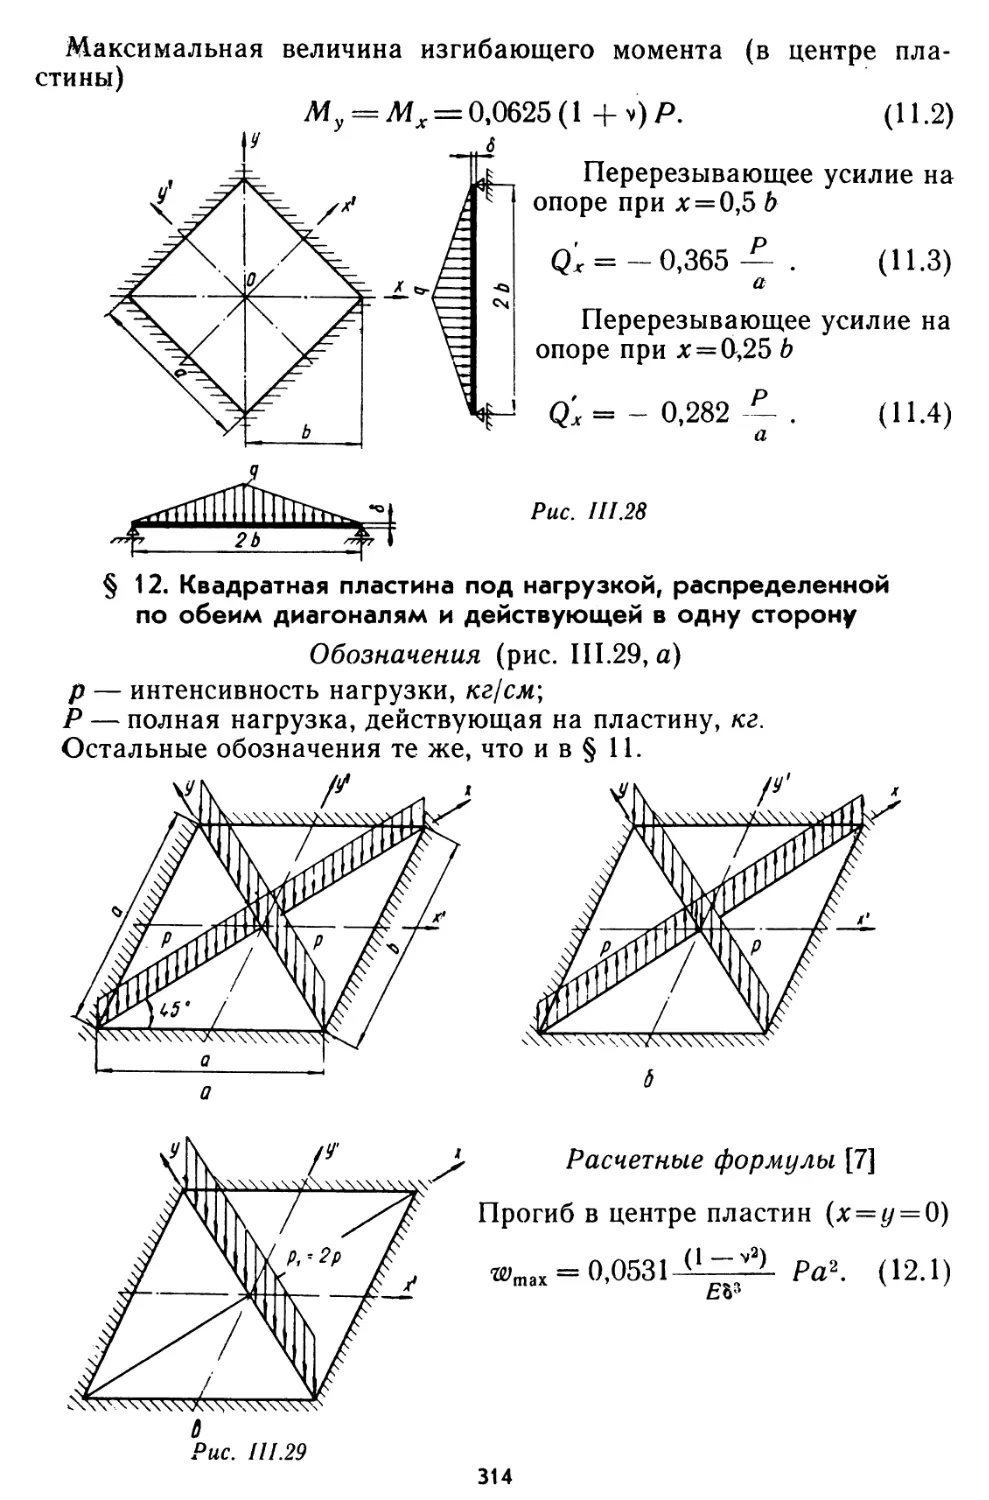 § 12. Квадратная пластина под нагрузкой, распределенной по обеим диагоналям и действующей в одну сторону